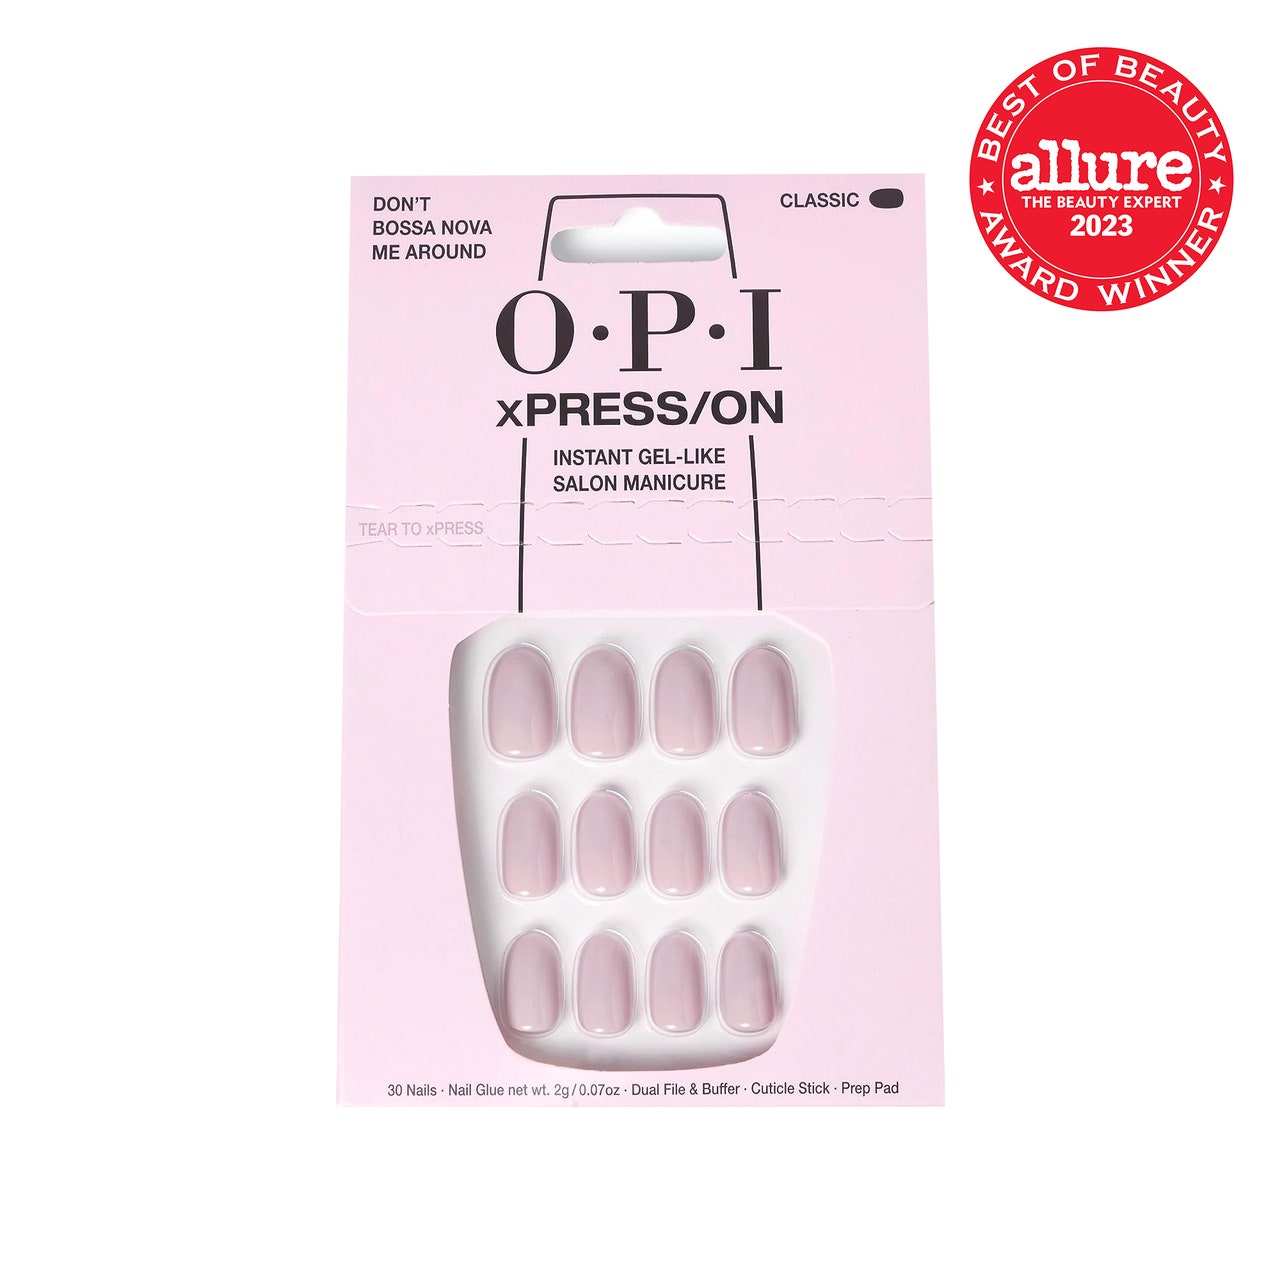 OPI xPress/On Press On Nails, rosa und transparente Schachtel mit kurzen blassrosa Press On Nails auf weißem Hintergrund mit rotem Allure BoB-Siegel in der oberen rechten Ecke